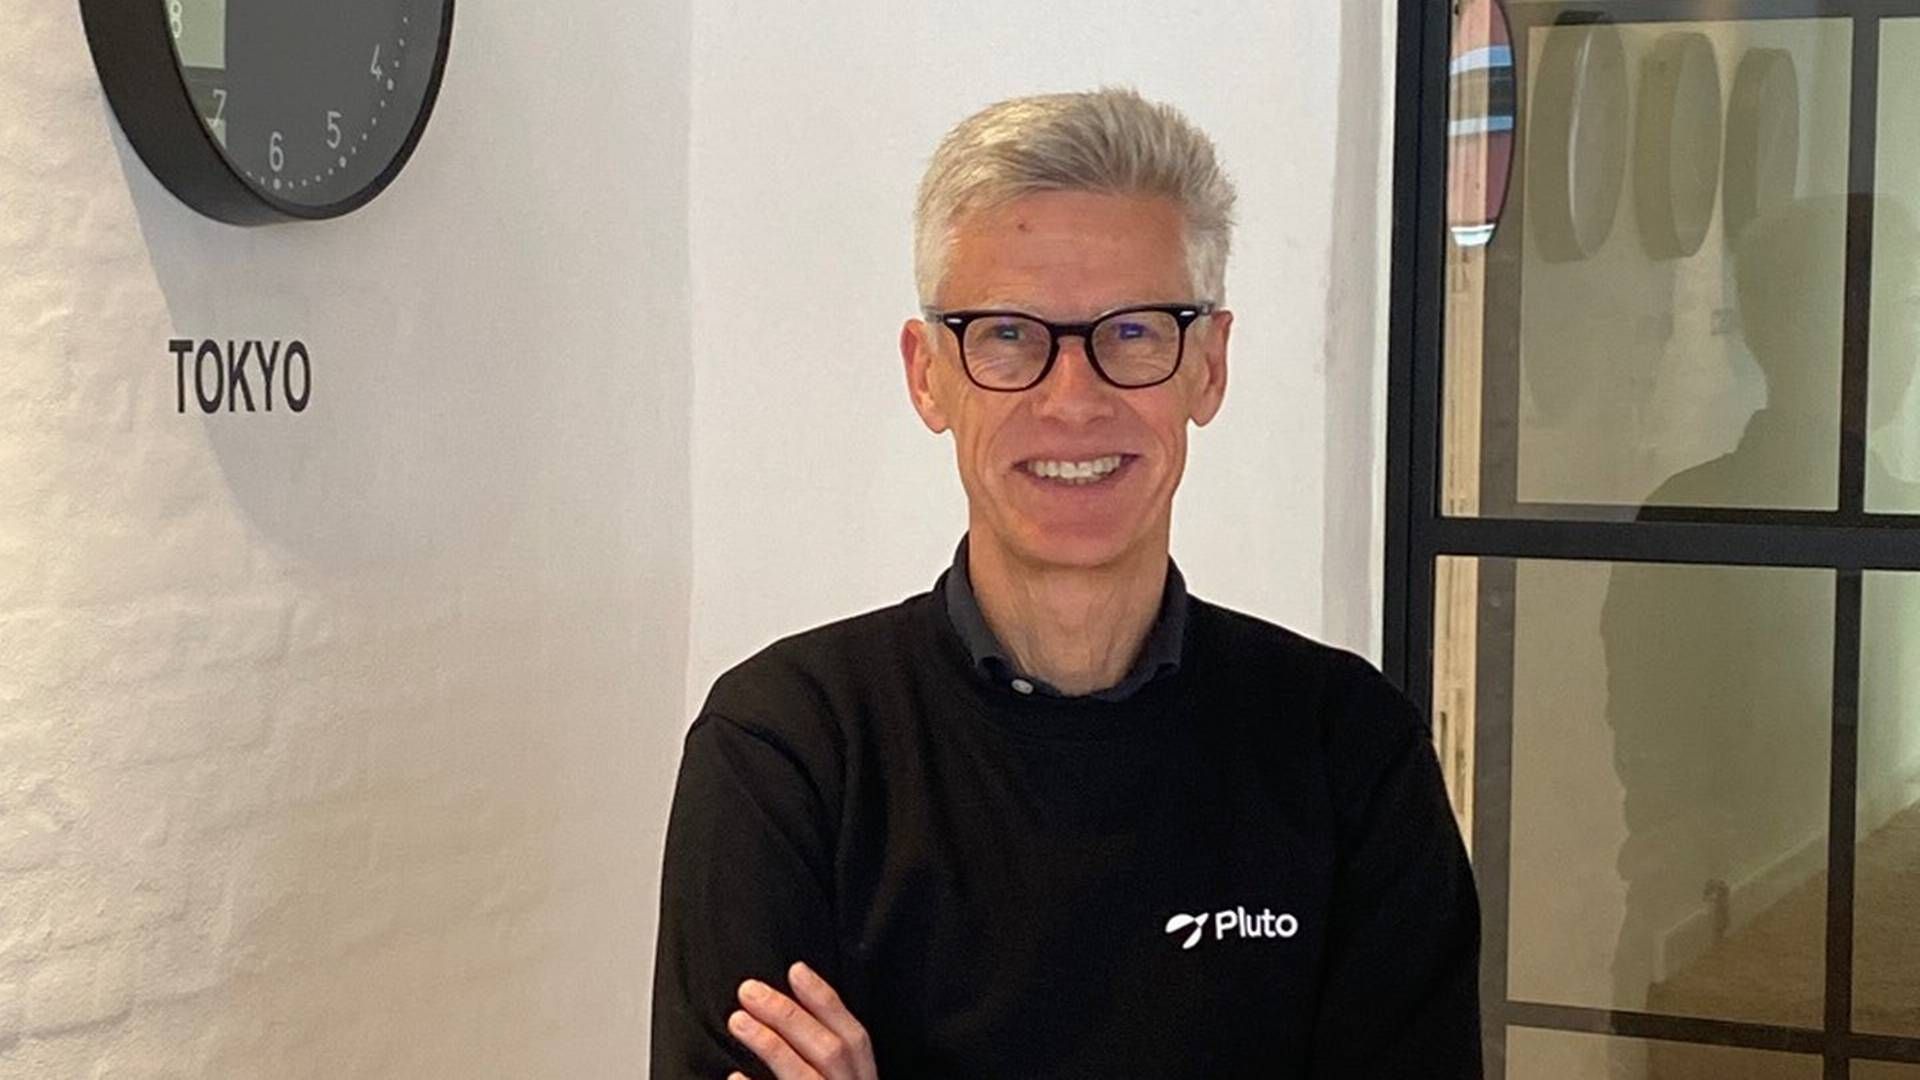 Den nye bestyrelsesformand, Claus Nielsen, mener, at Pluto Markets er det mest ambitiøse projekt i sektoren lige nu. "Og skal bidrage til at skabe en bedre, bredere og billigere investeringsoplevelse.” | Foto: Pluto Markets/pr